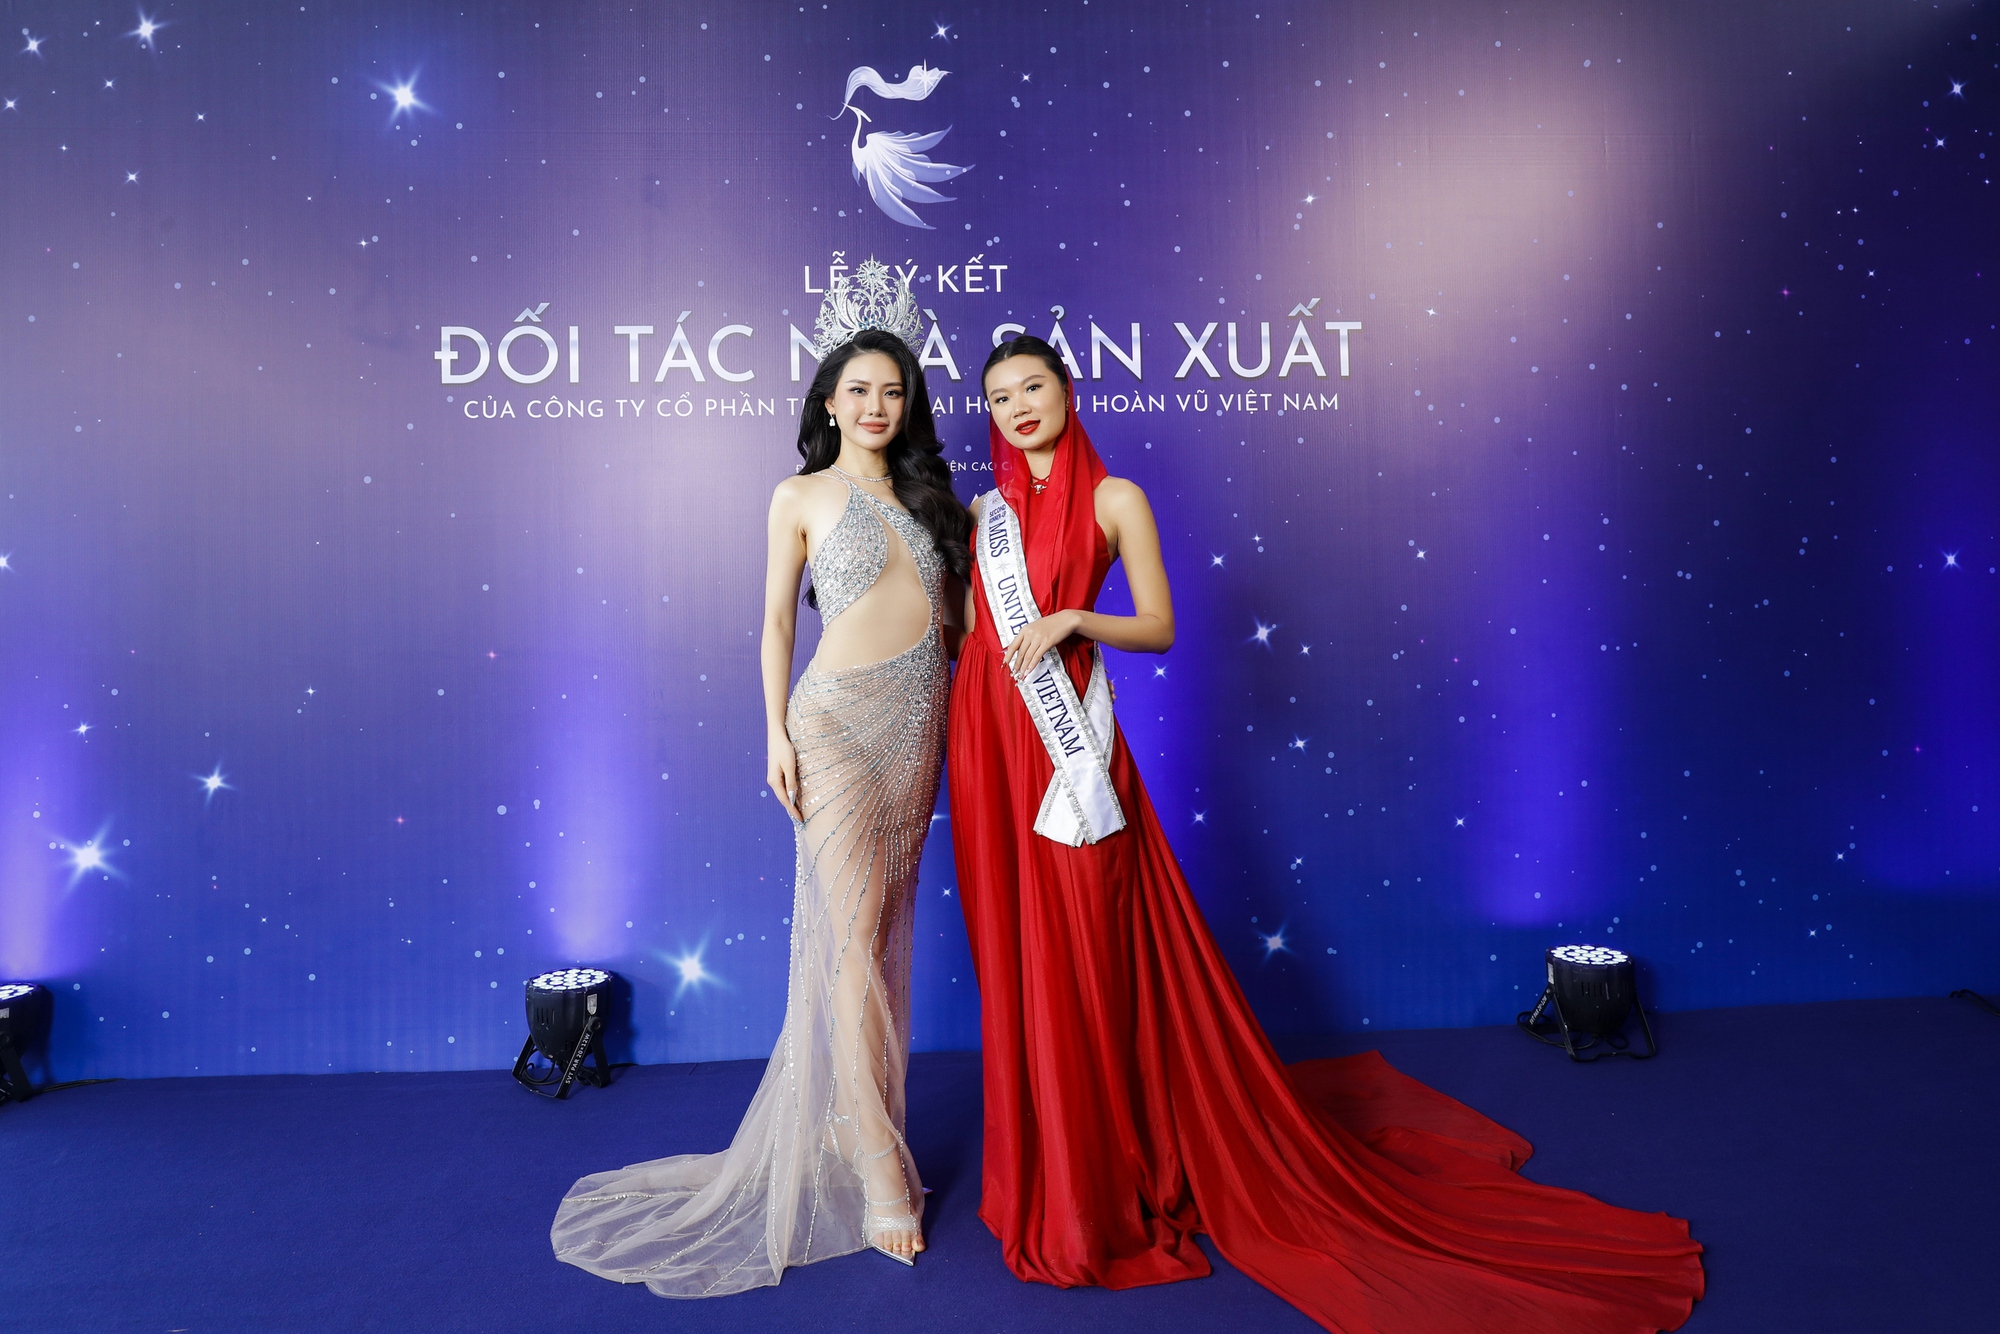 Hương Giang - Dược sĩ Tiến chính thức là NSX Miss Universe Vietnam, Lan Khuê rời ghế giám đốc điều hành- Ảnh 3.